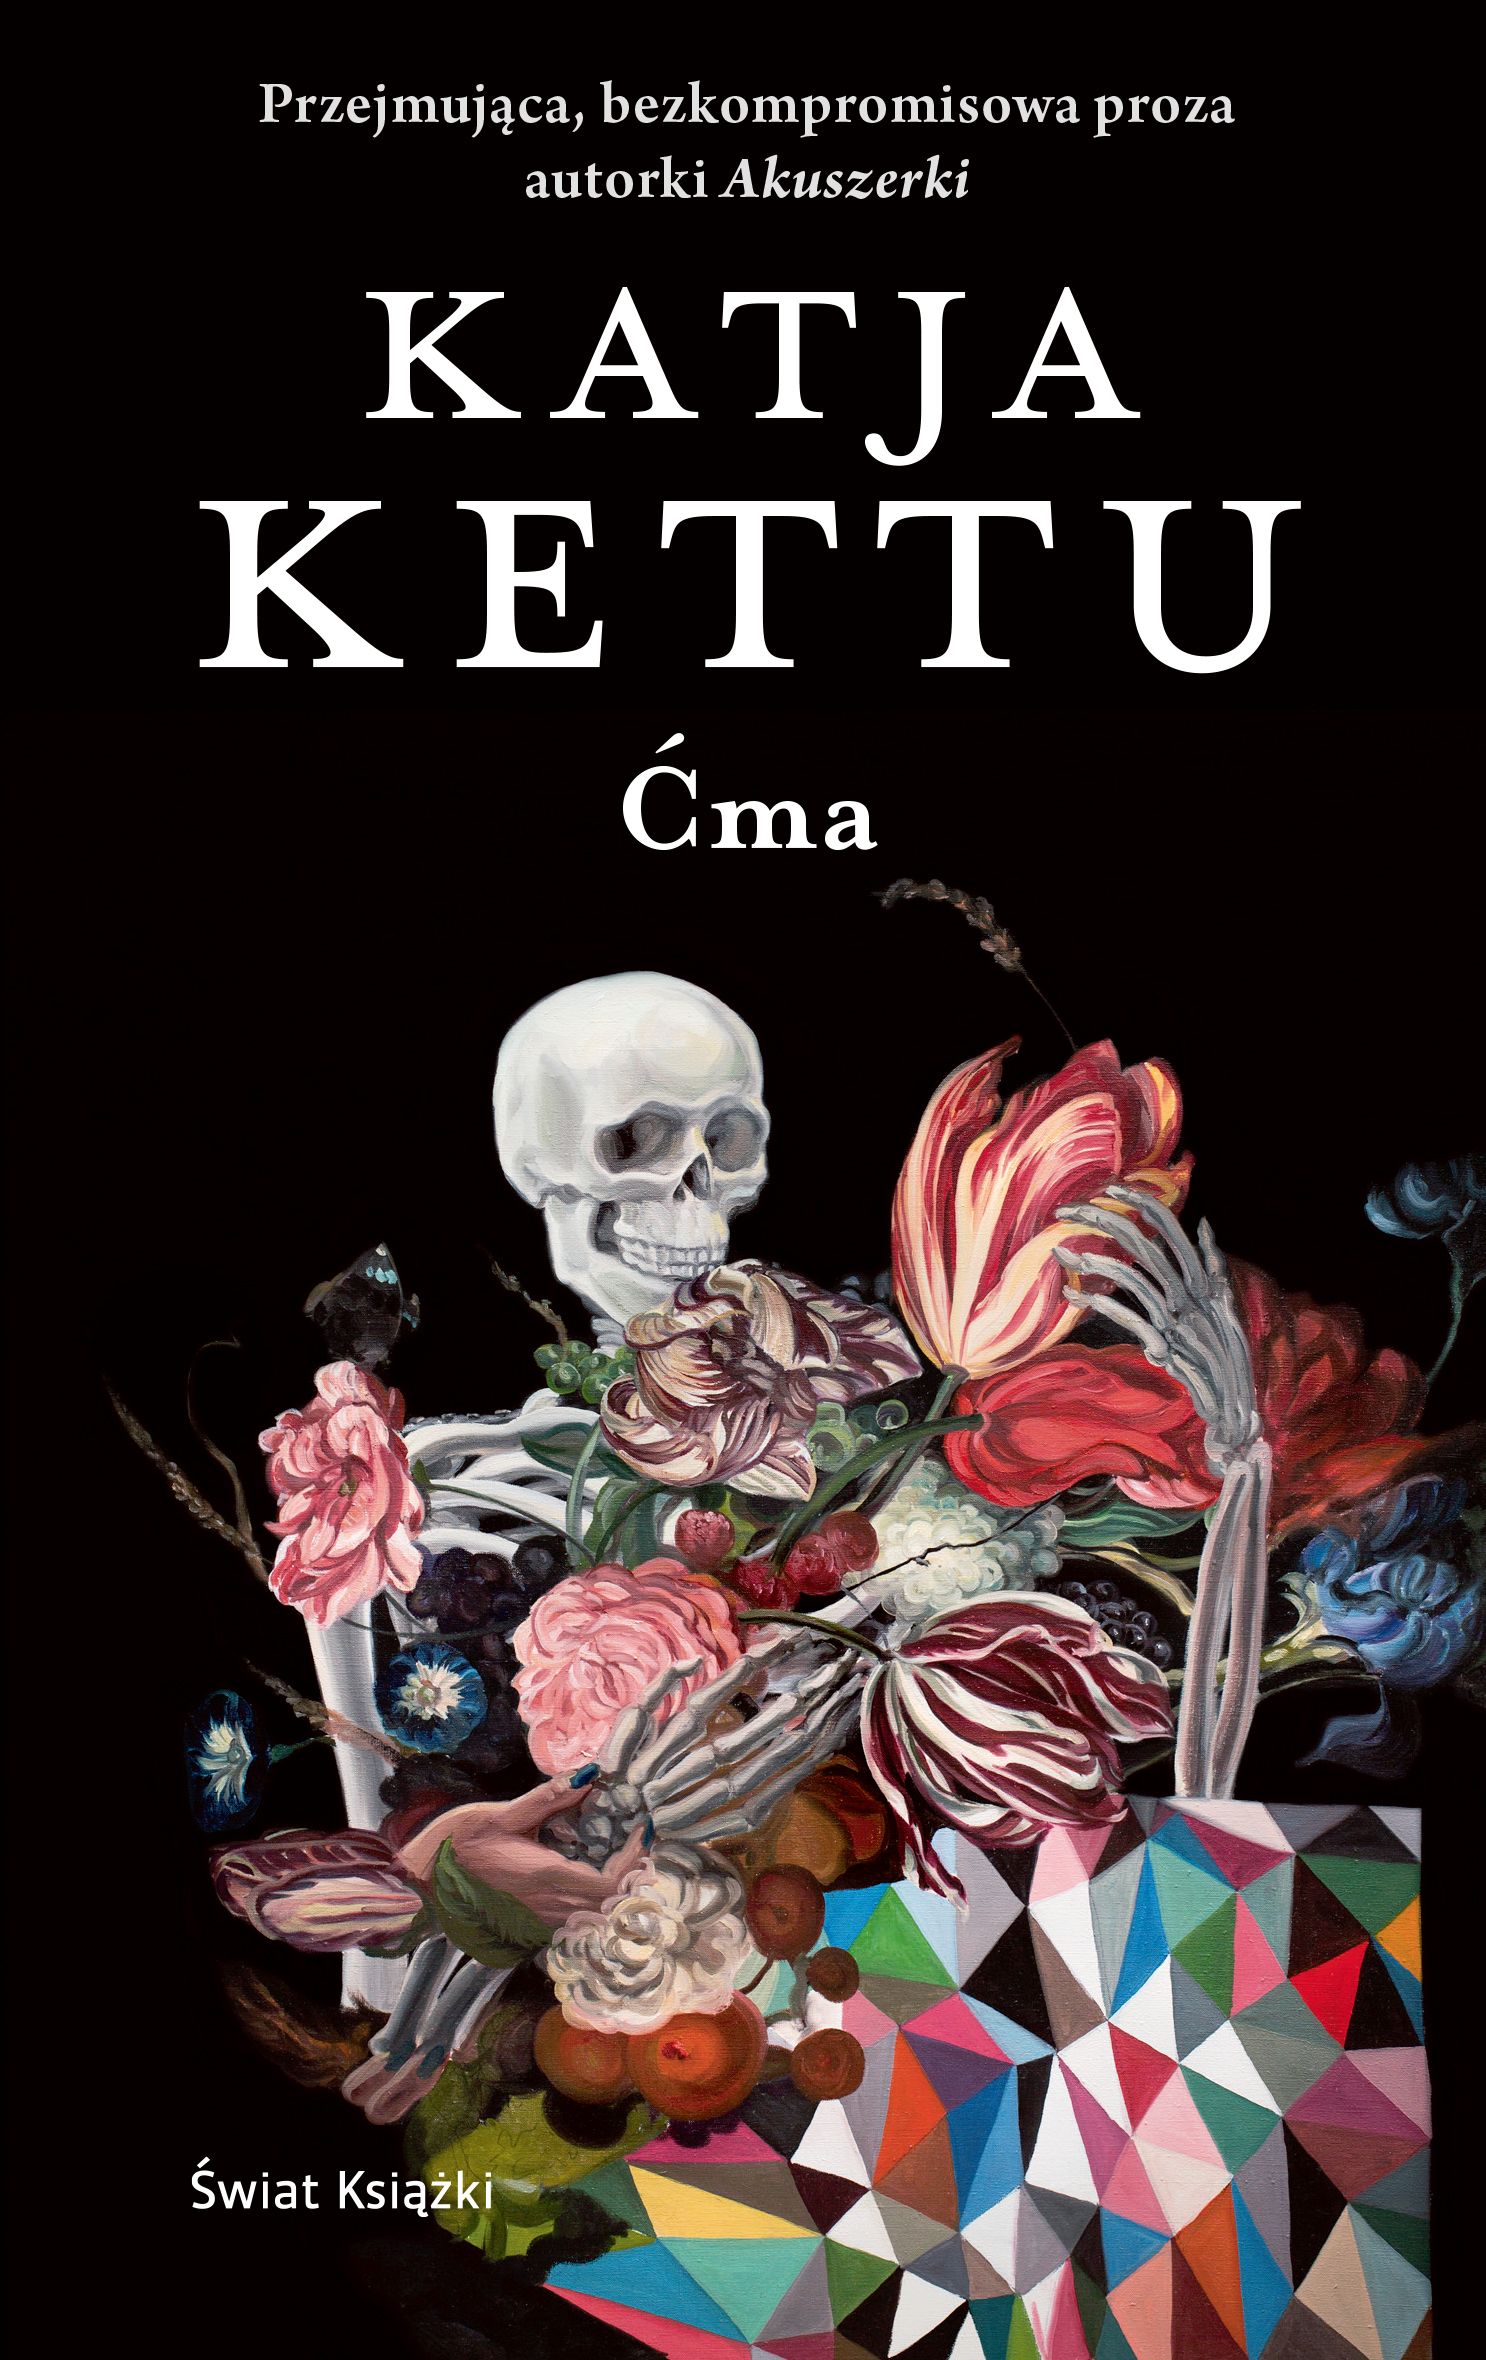 Artykuł powstał między innymi w oparciu o książkę Katji Kettu "Ćma", która ukazała się właśnie nakładem wydawnictwa Świat Książki.